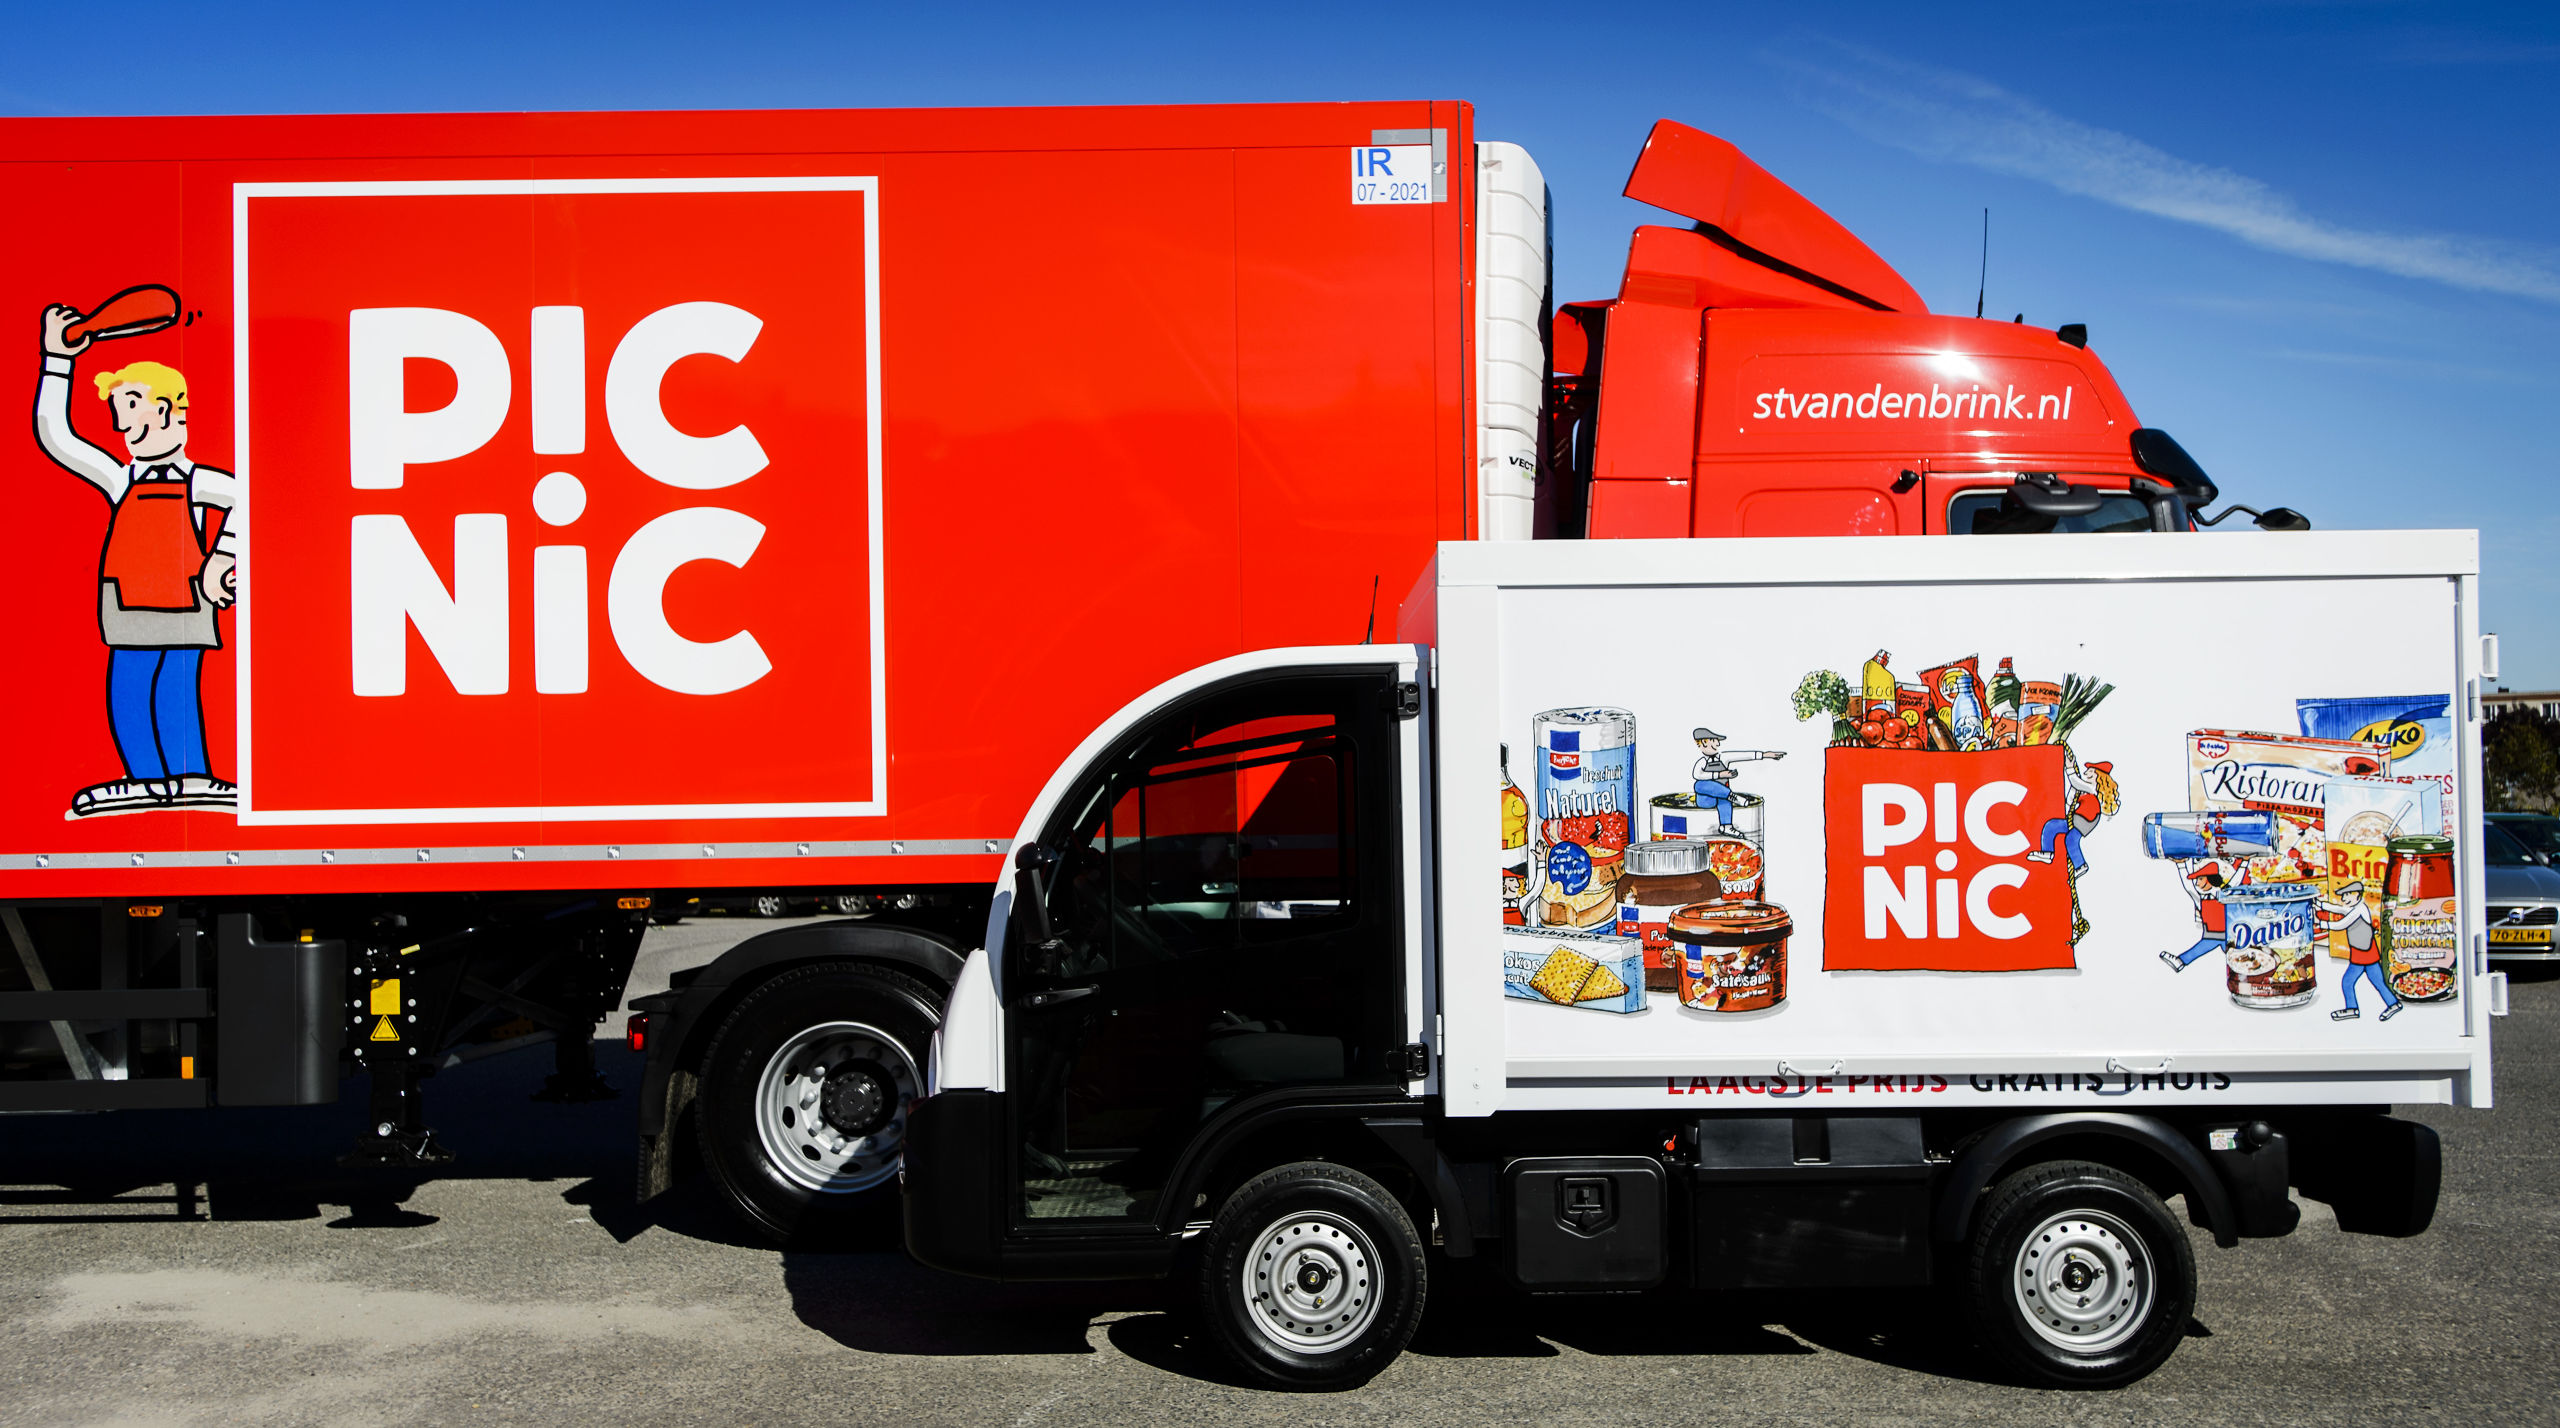 Vrachtwagens van Picnic tijdens de lancering van de boodschappenservice. Gebruikers van de internetsupermarkt kunnen bestellen via een app of website, en krijgen hun boodschappen thuisbezorgd met een elektrisch bestelbusje. 